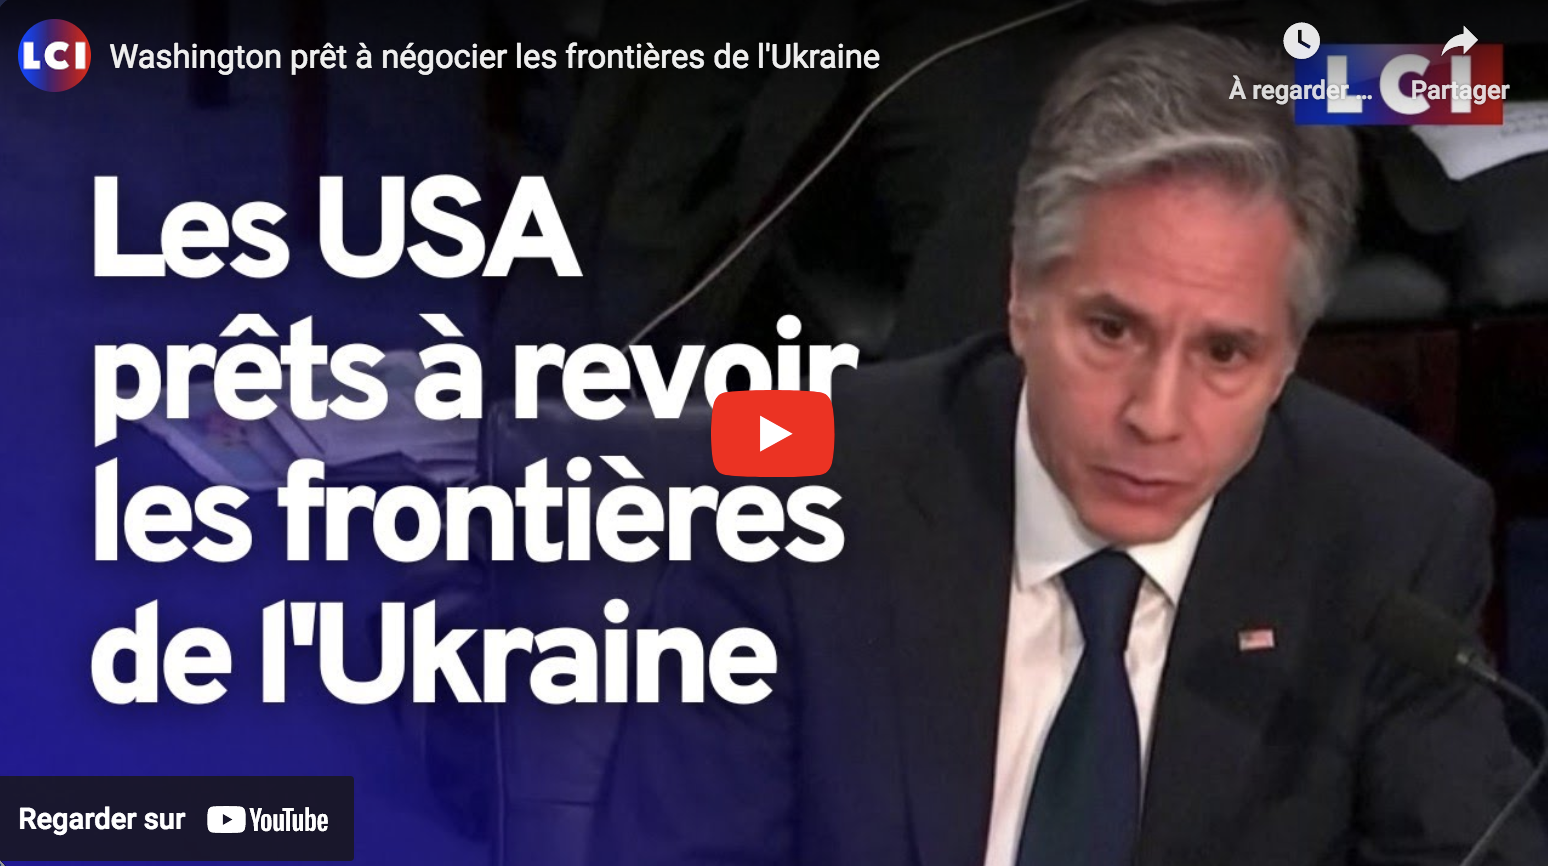 Washington prêt à négocier les frontières de l’Ukraine (Antony Blinken)